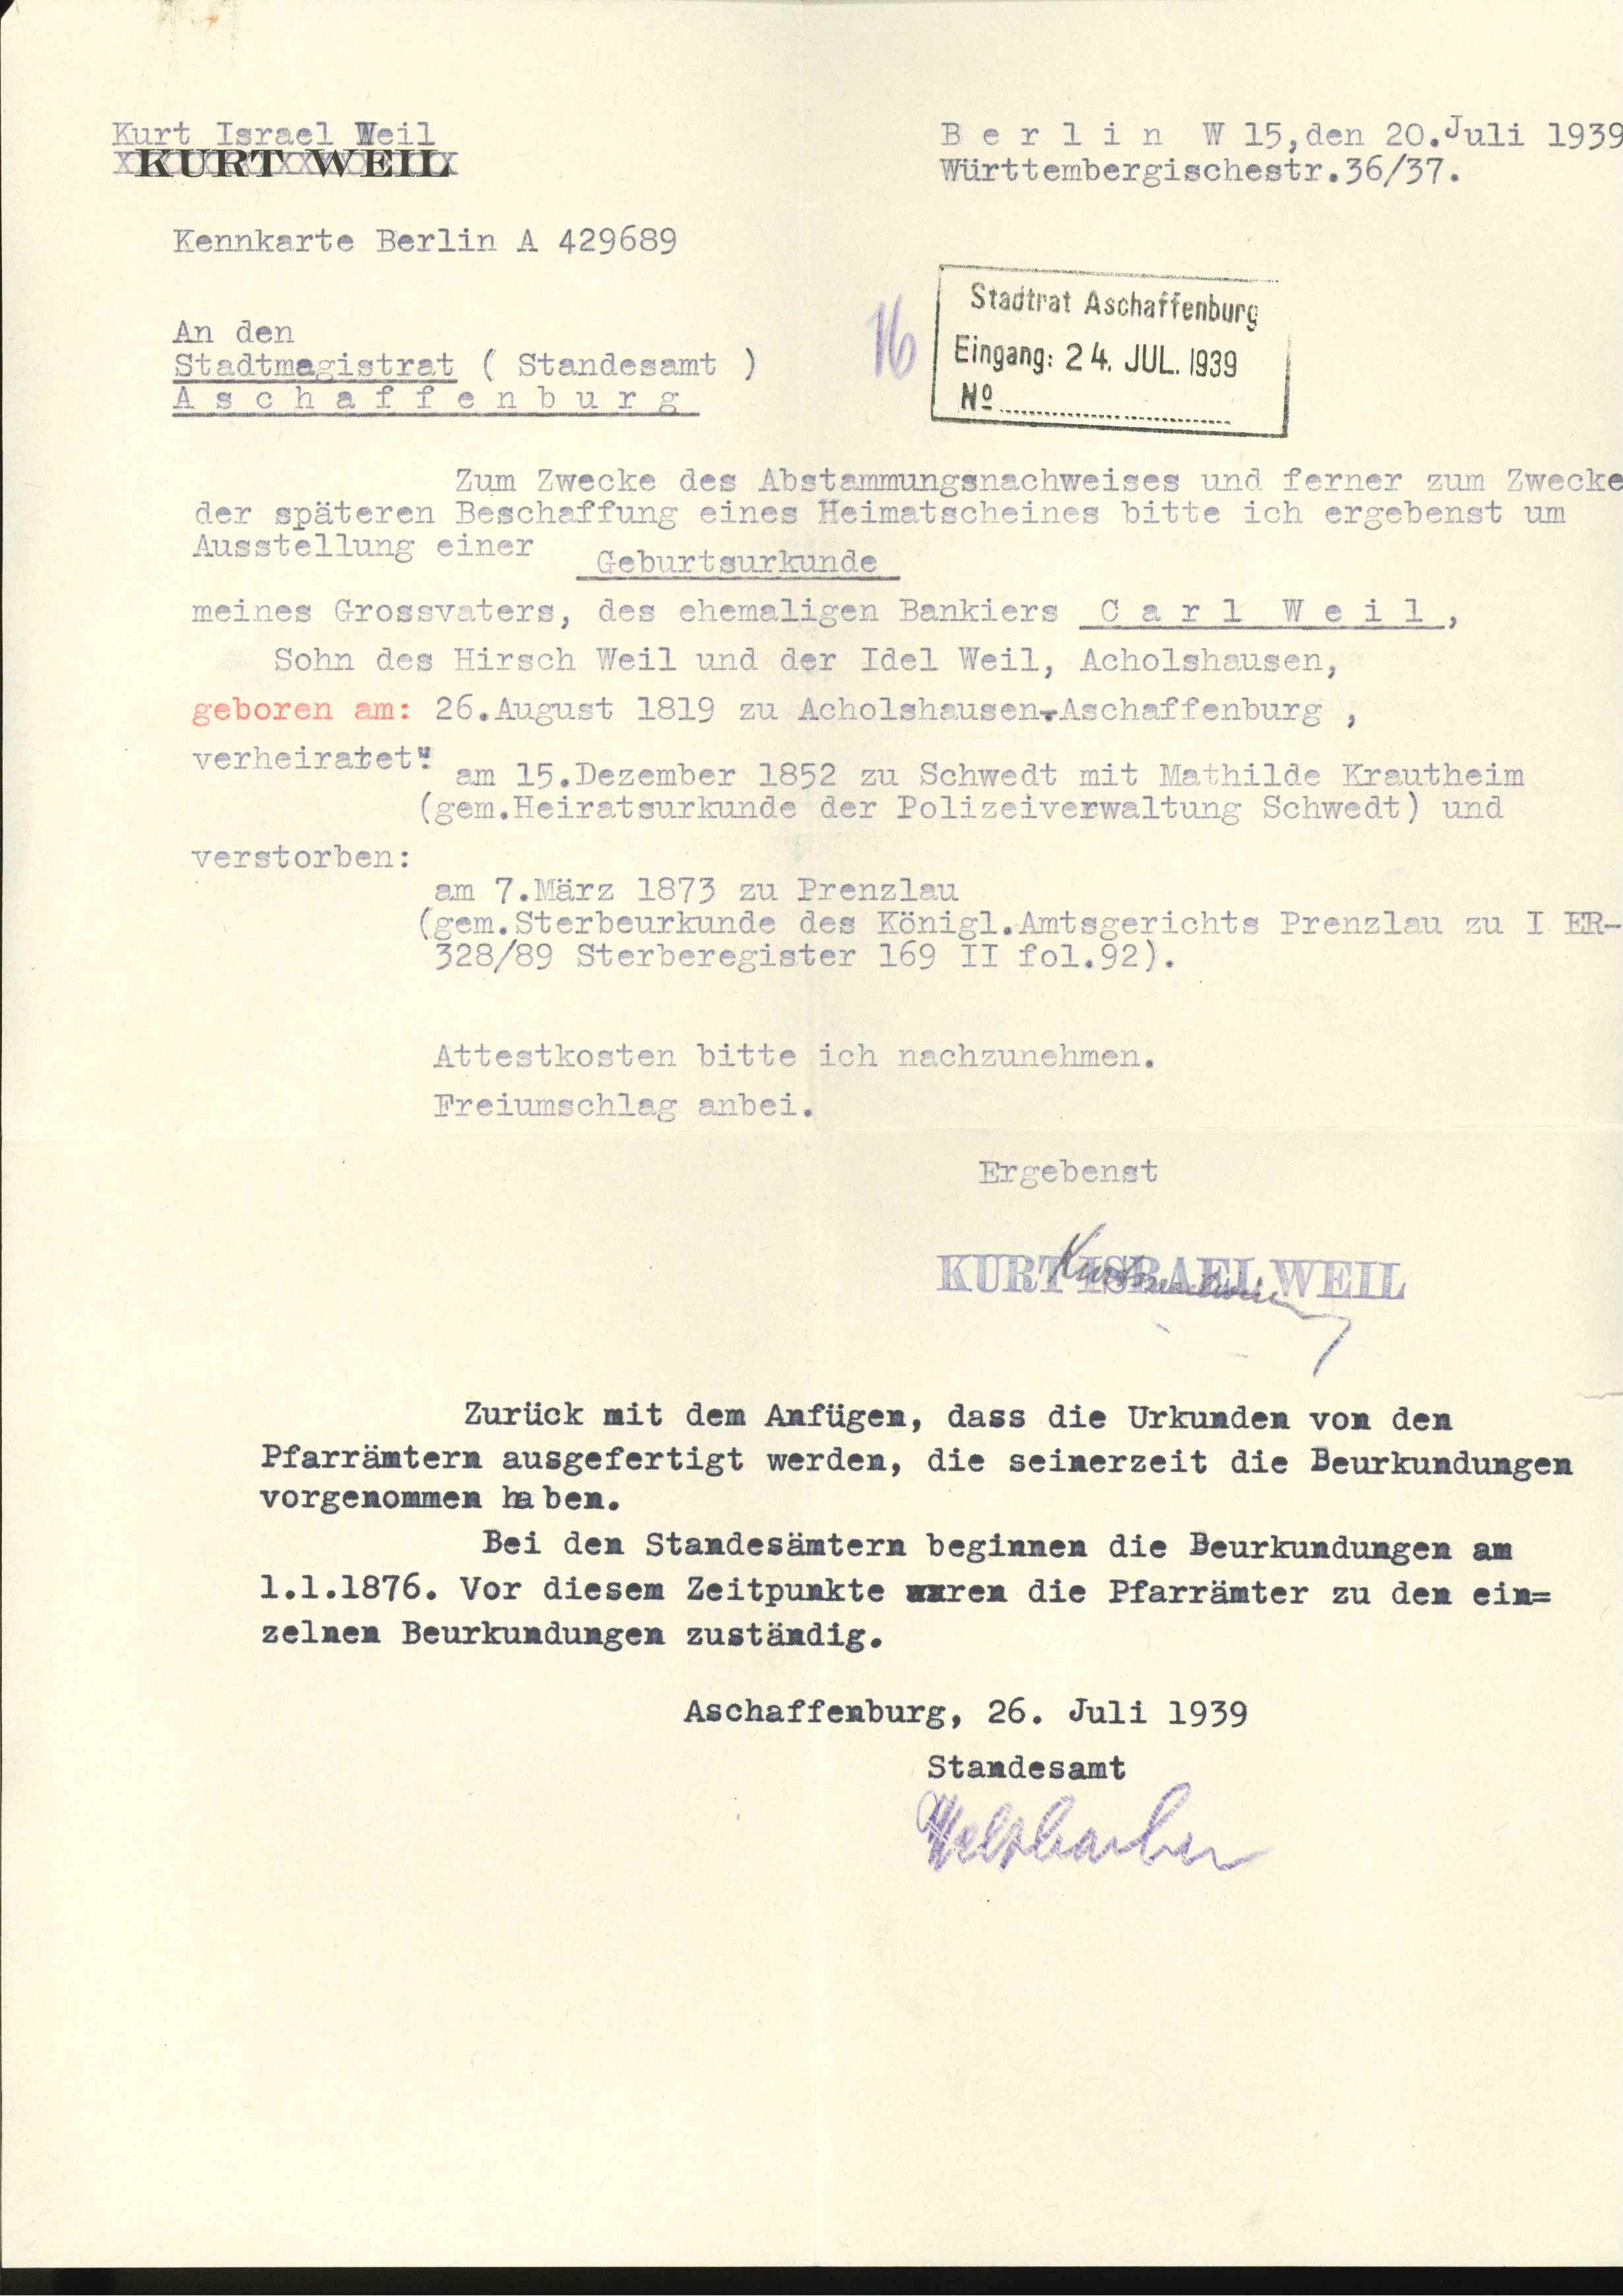 Bitte an den Stadtrat Aschaffenburg um Geburtsurkunde von Carl Weil 1939 (KTL CC BY-NC-SA)